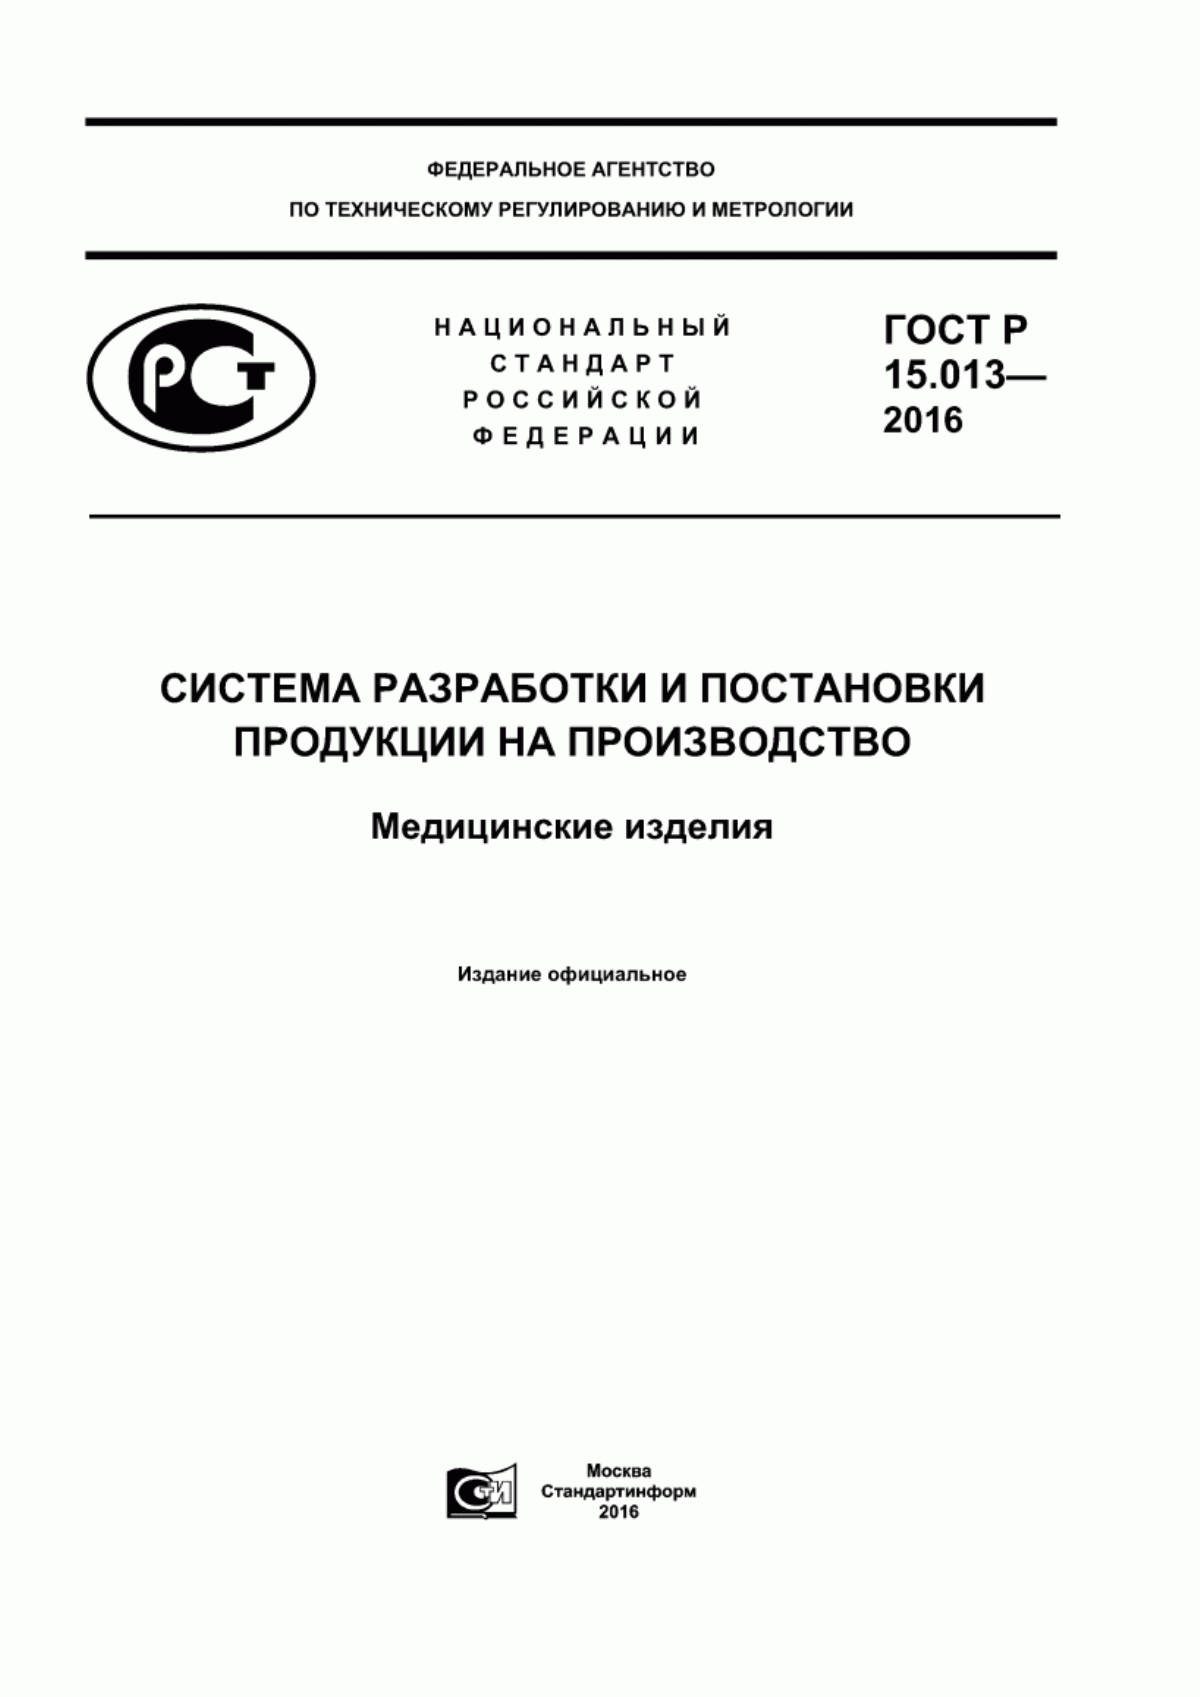 ГОСТ Р 15.013-2016 Система разработки и постановки продукции на производство. Медицинские изделия